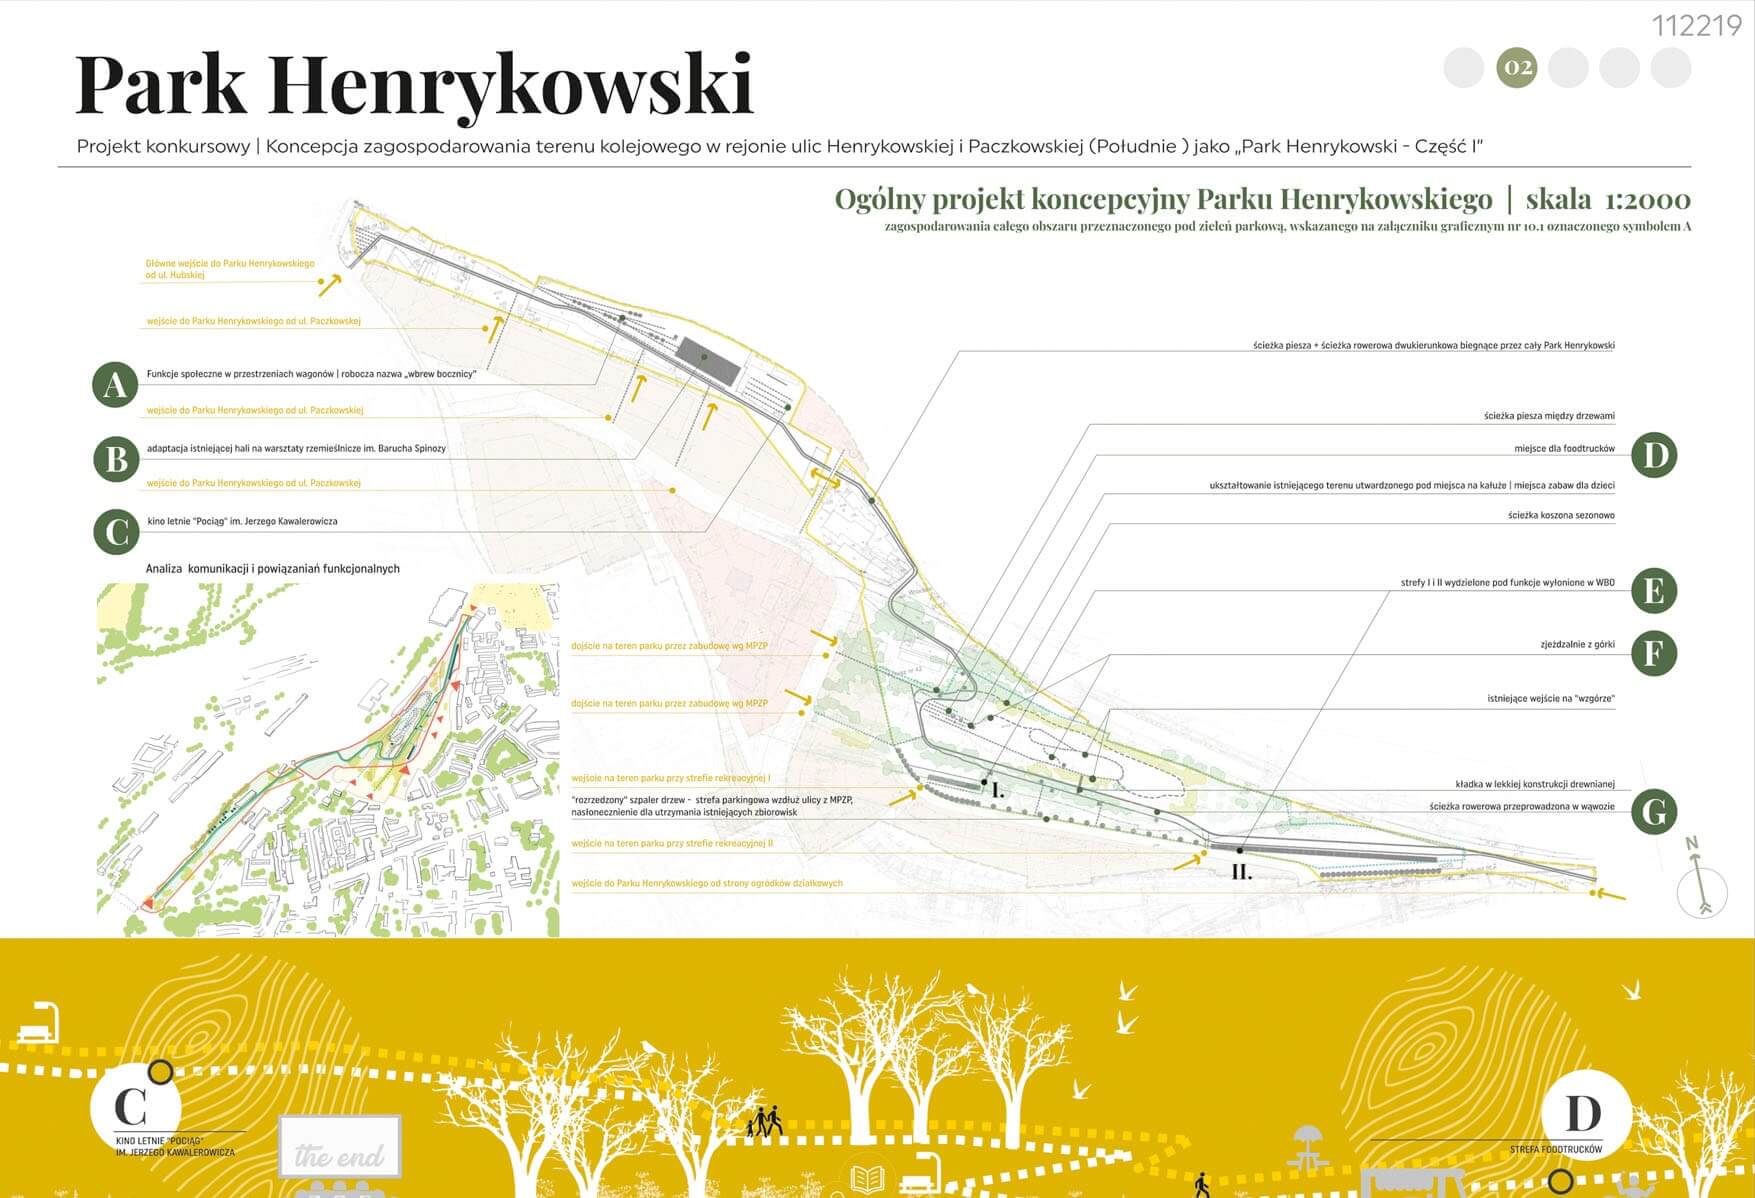 Park Henrykowski-konkurs na opracowanie projektu koncepcyjnego